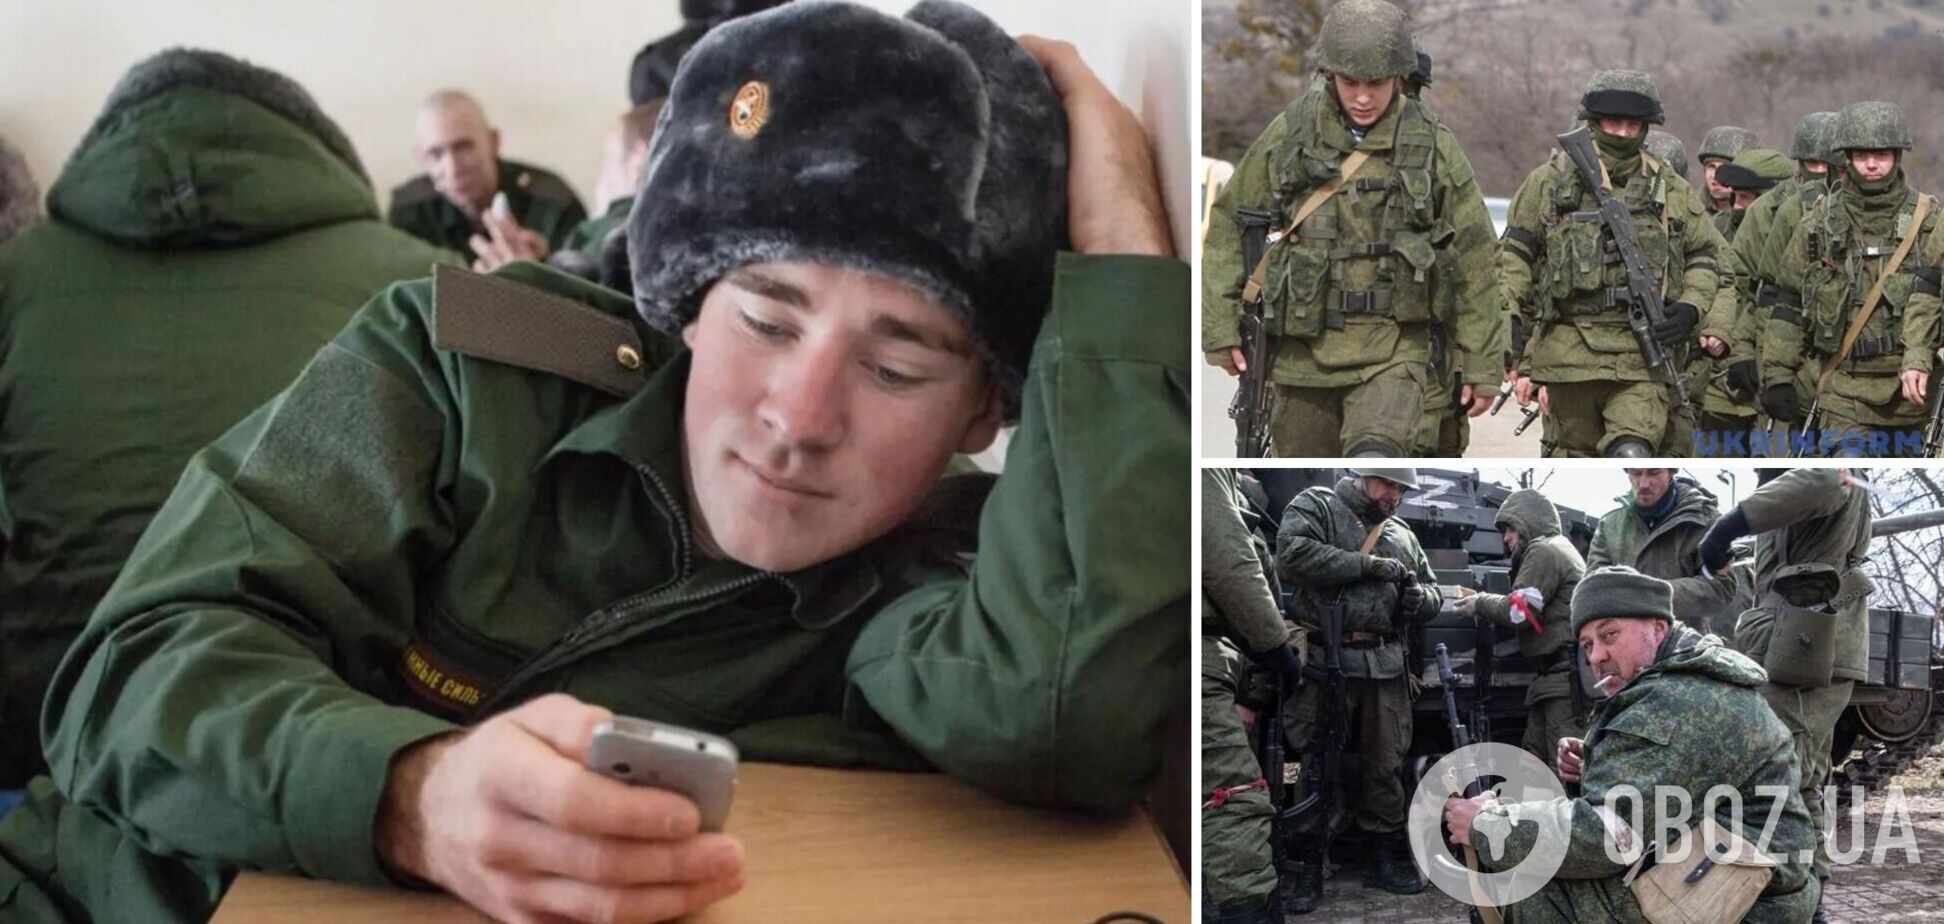 'Дважды контужен, выписываем': оккупант рассказал о потерях и произволе в войсках РФ. Аудио